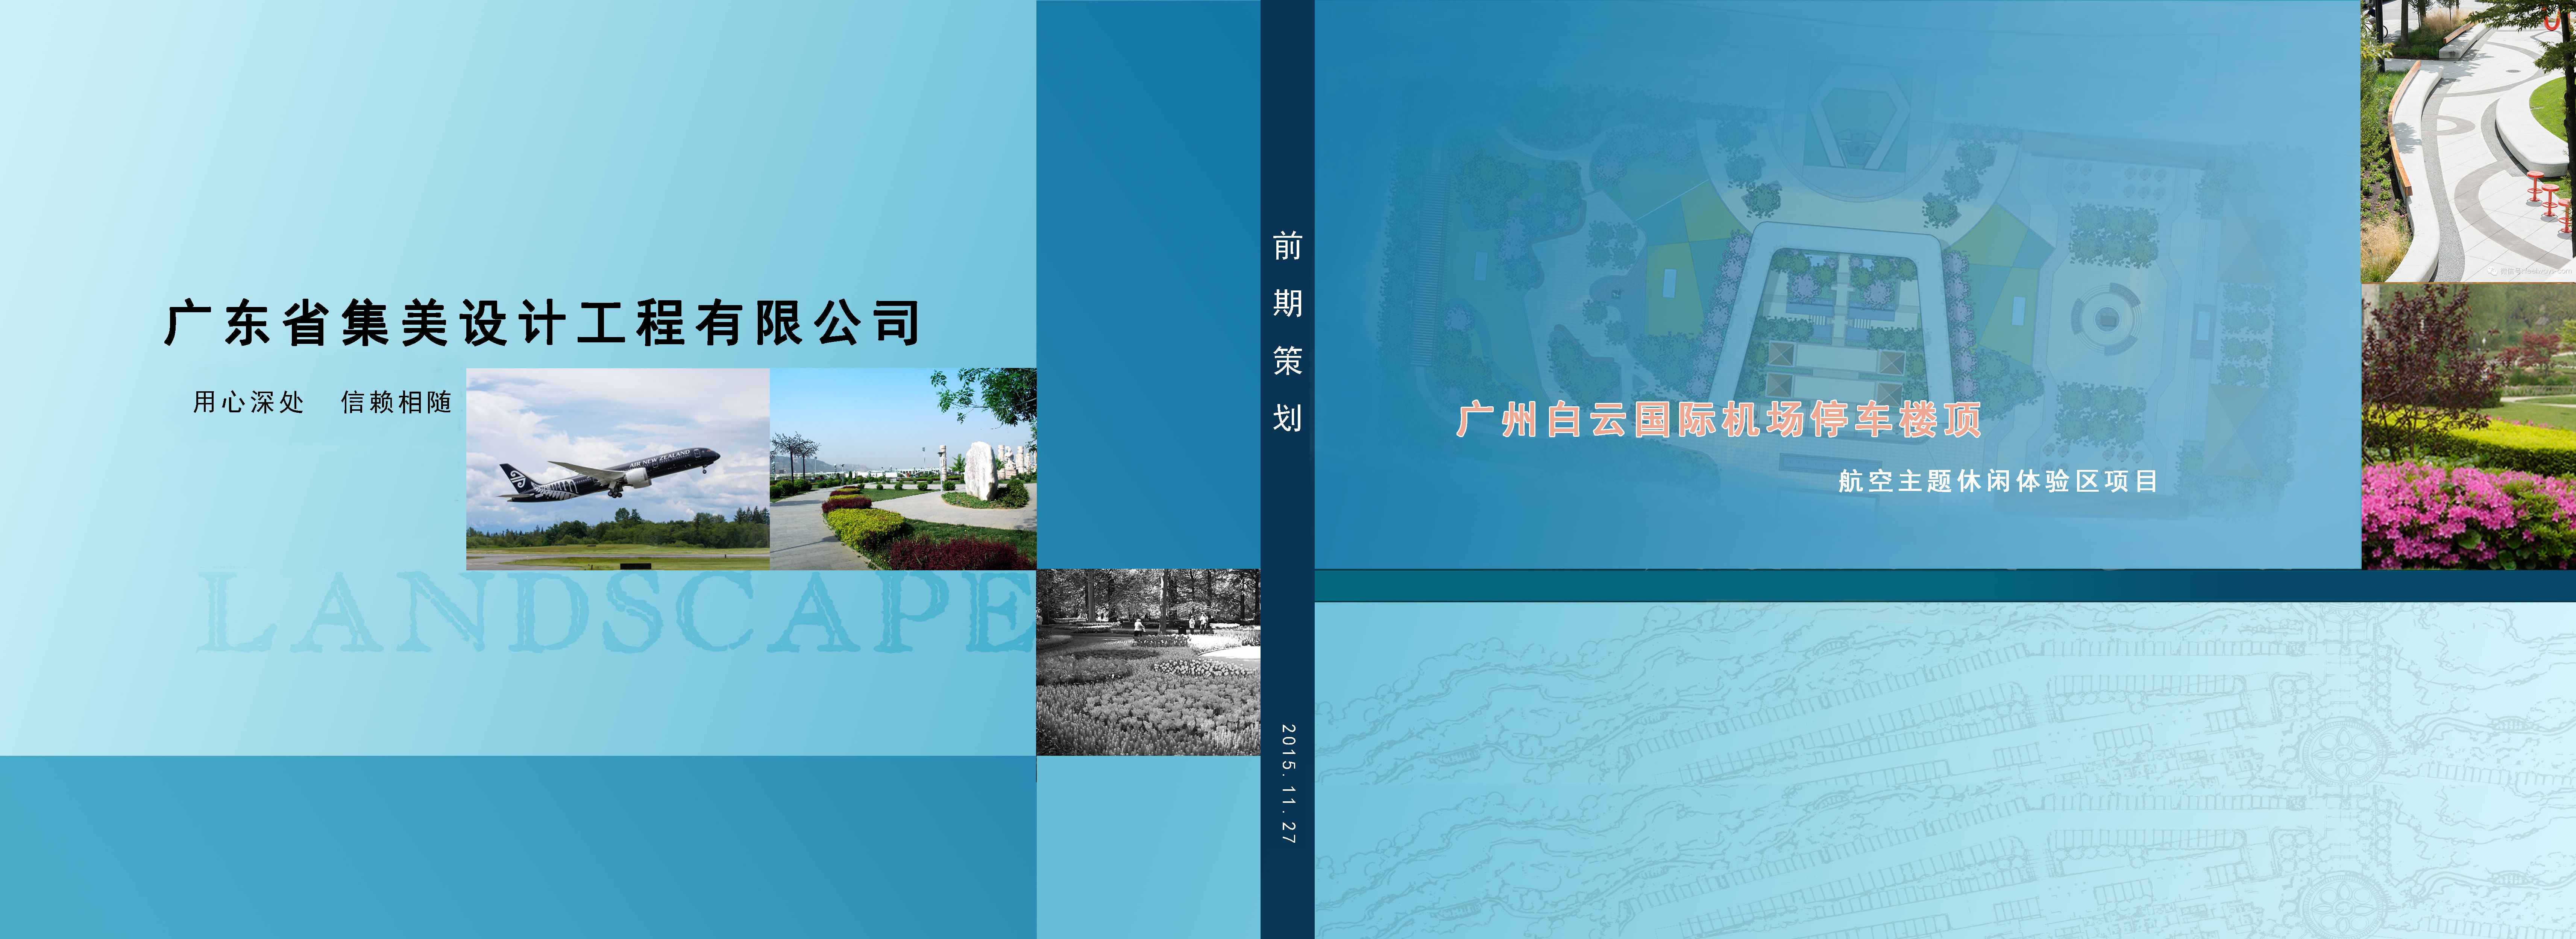 [广州]综合性主题休闲体验区设计方案